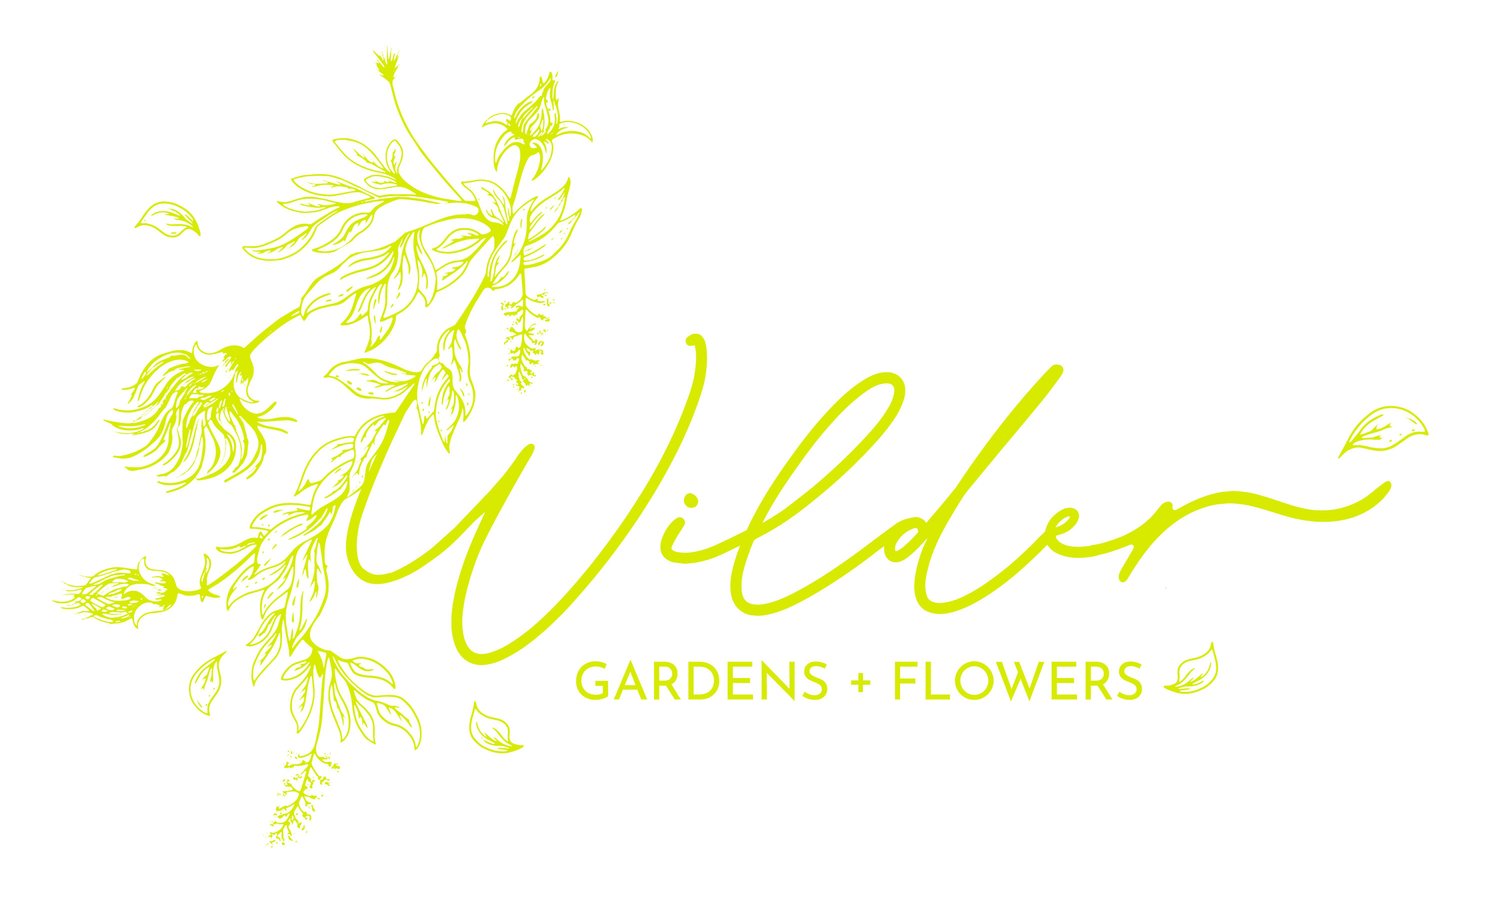 Wilder Gardens and Flowers